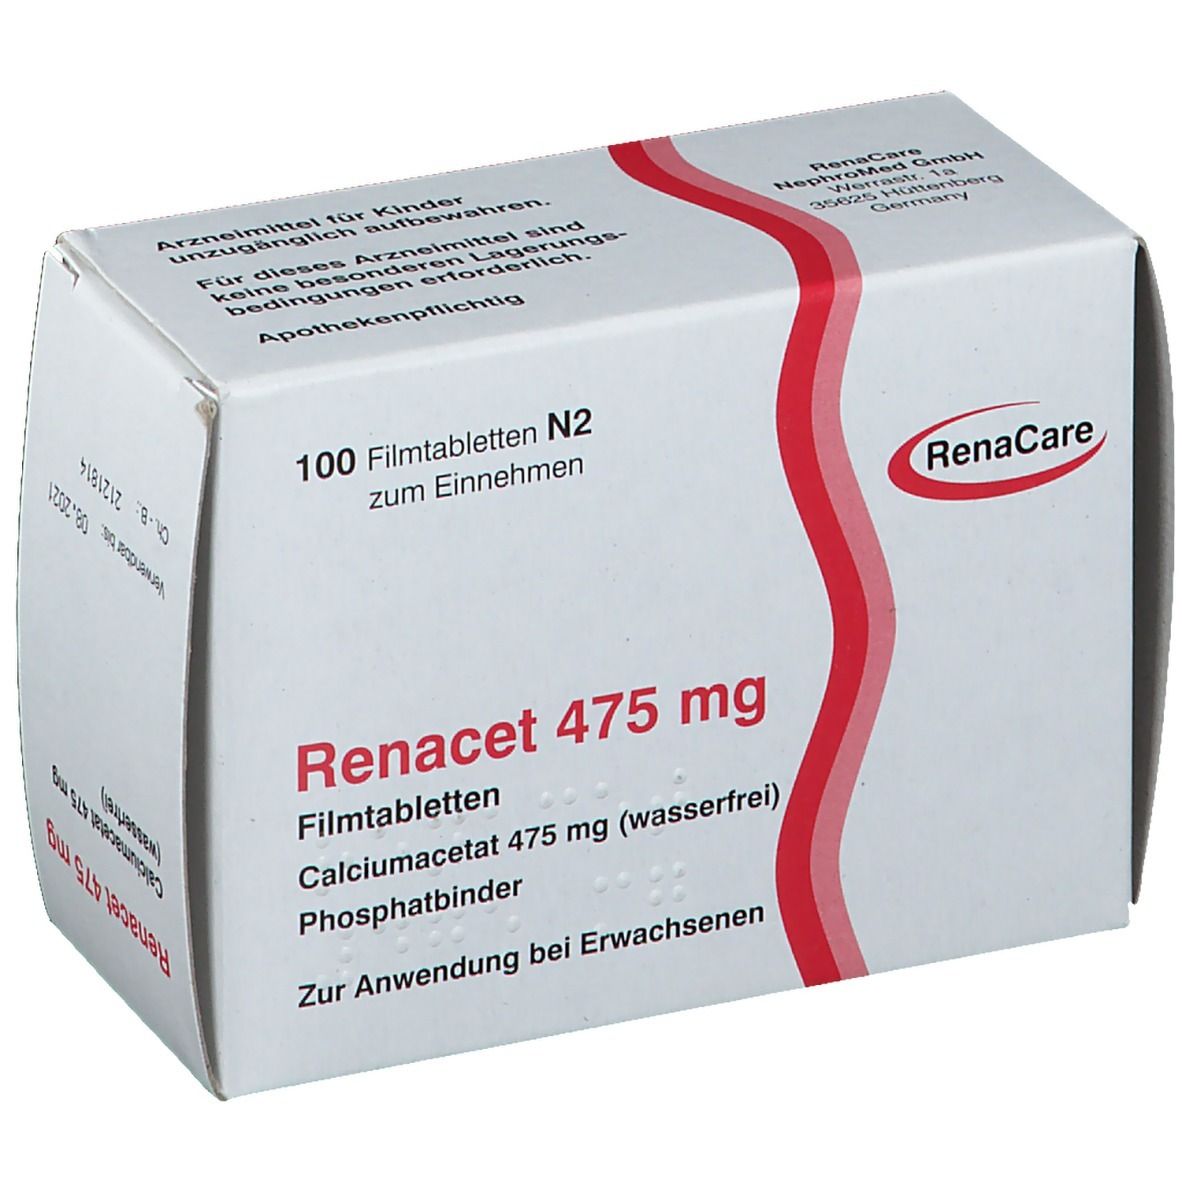 Renacet 475 mg Filmtabl.